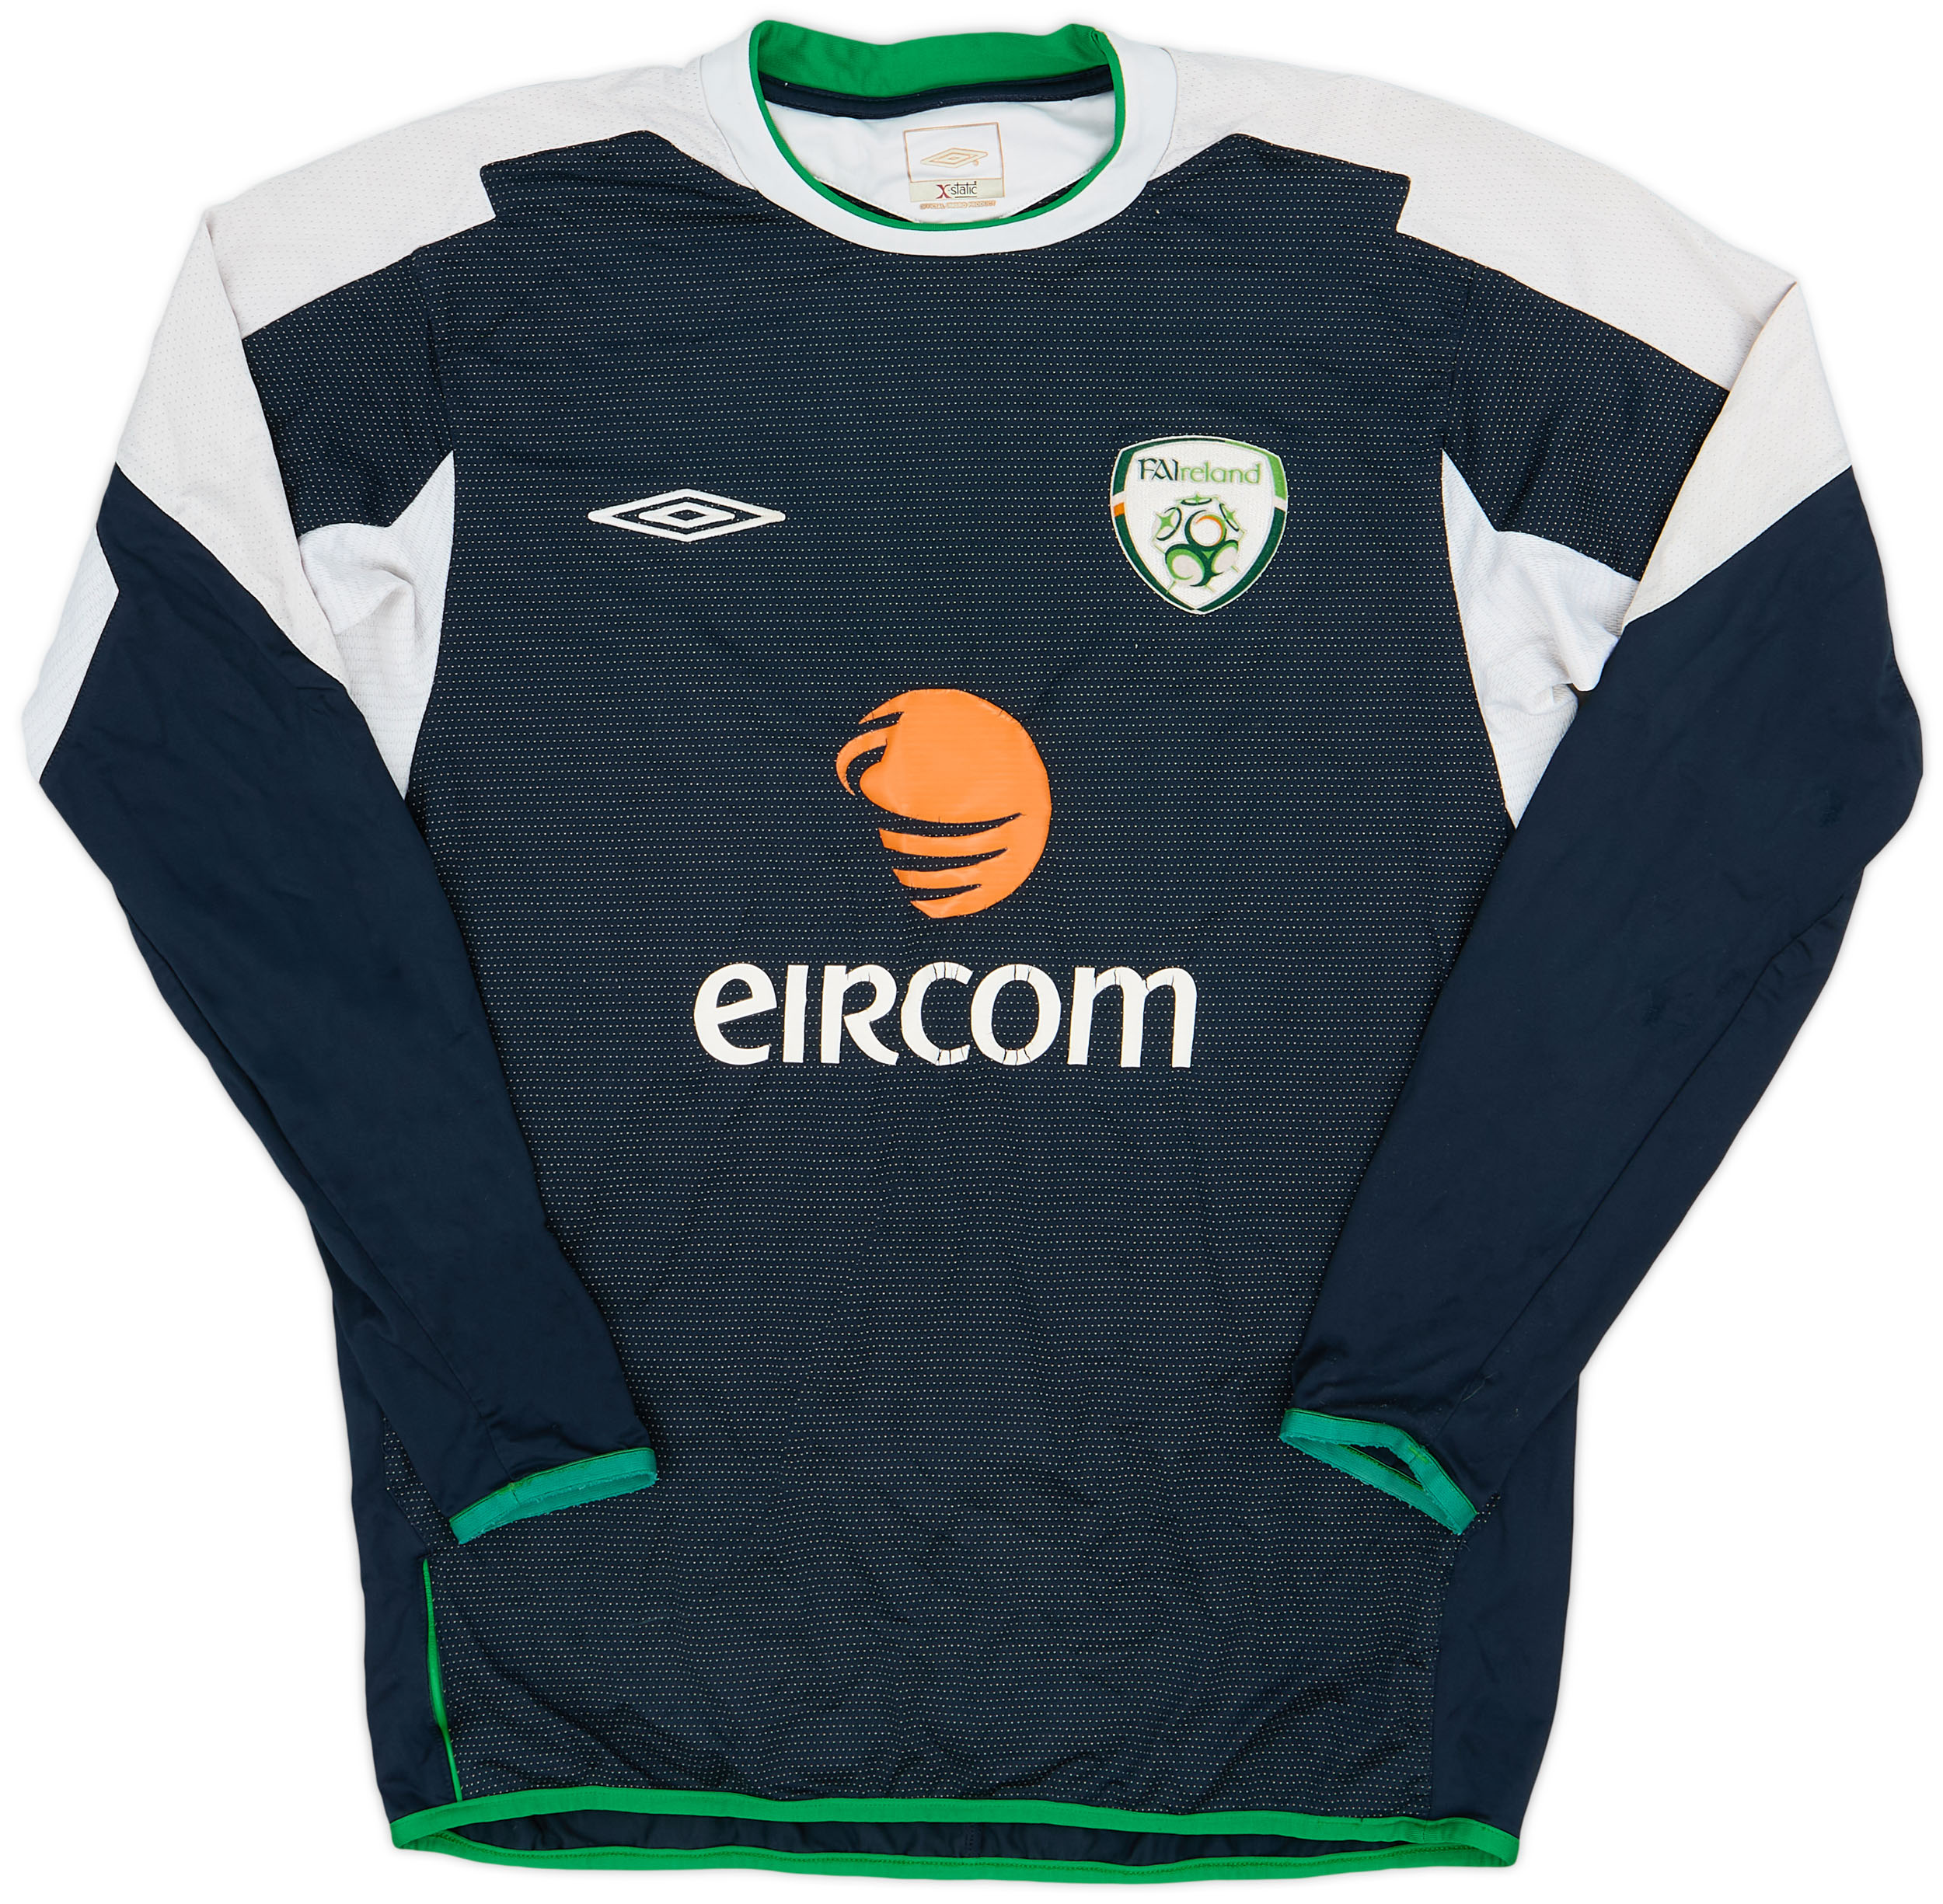 2004-06 Republic of Ireland GK Shirt - 6/10 - ()